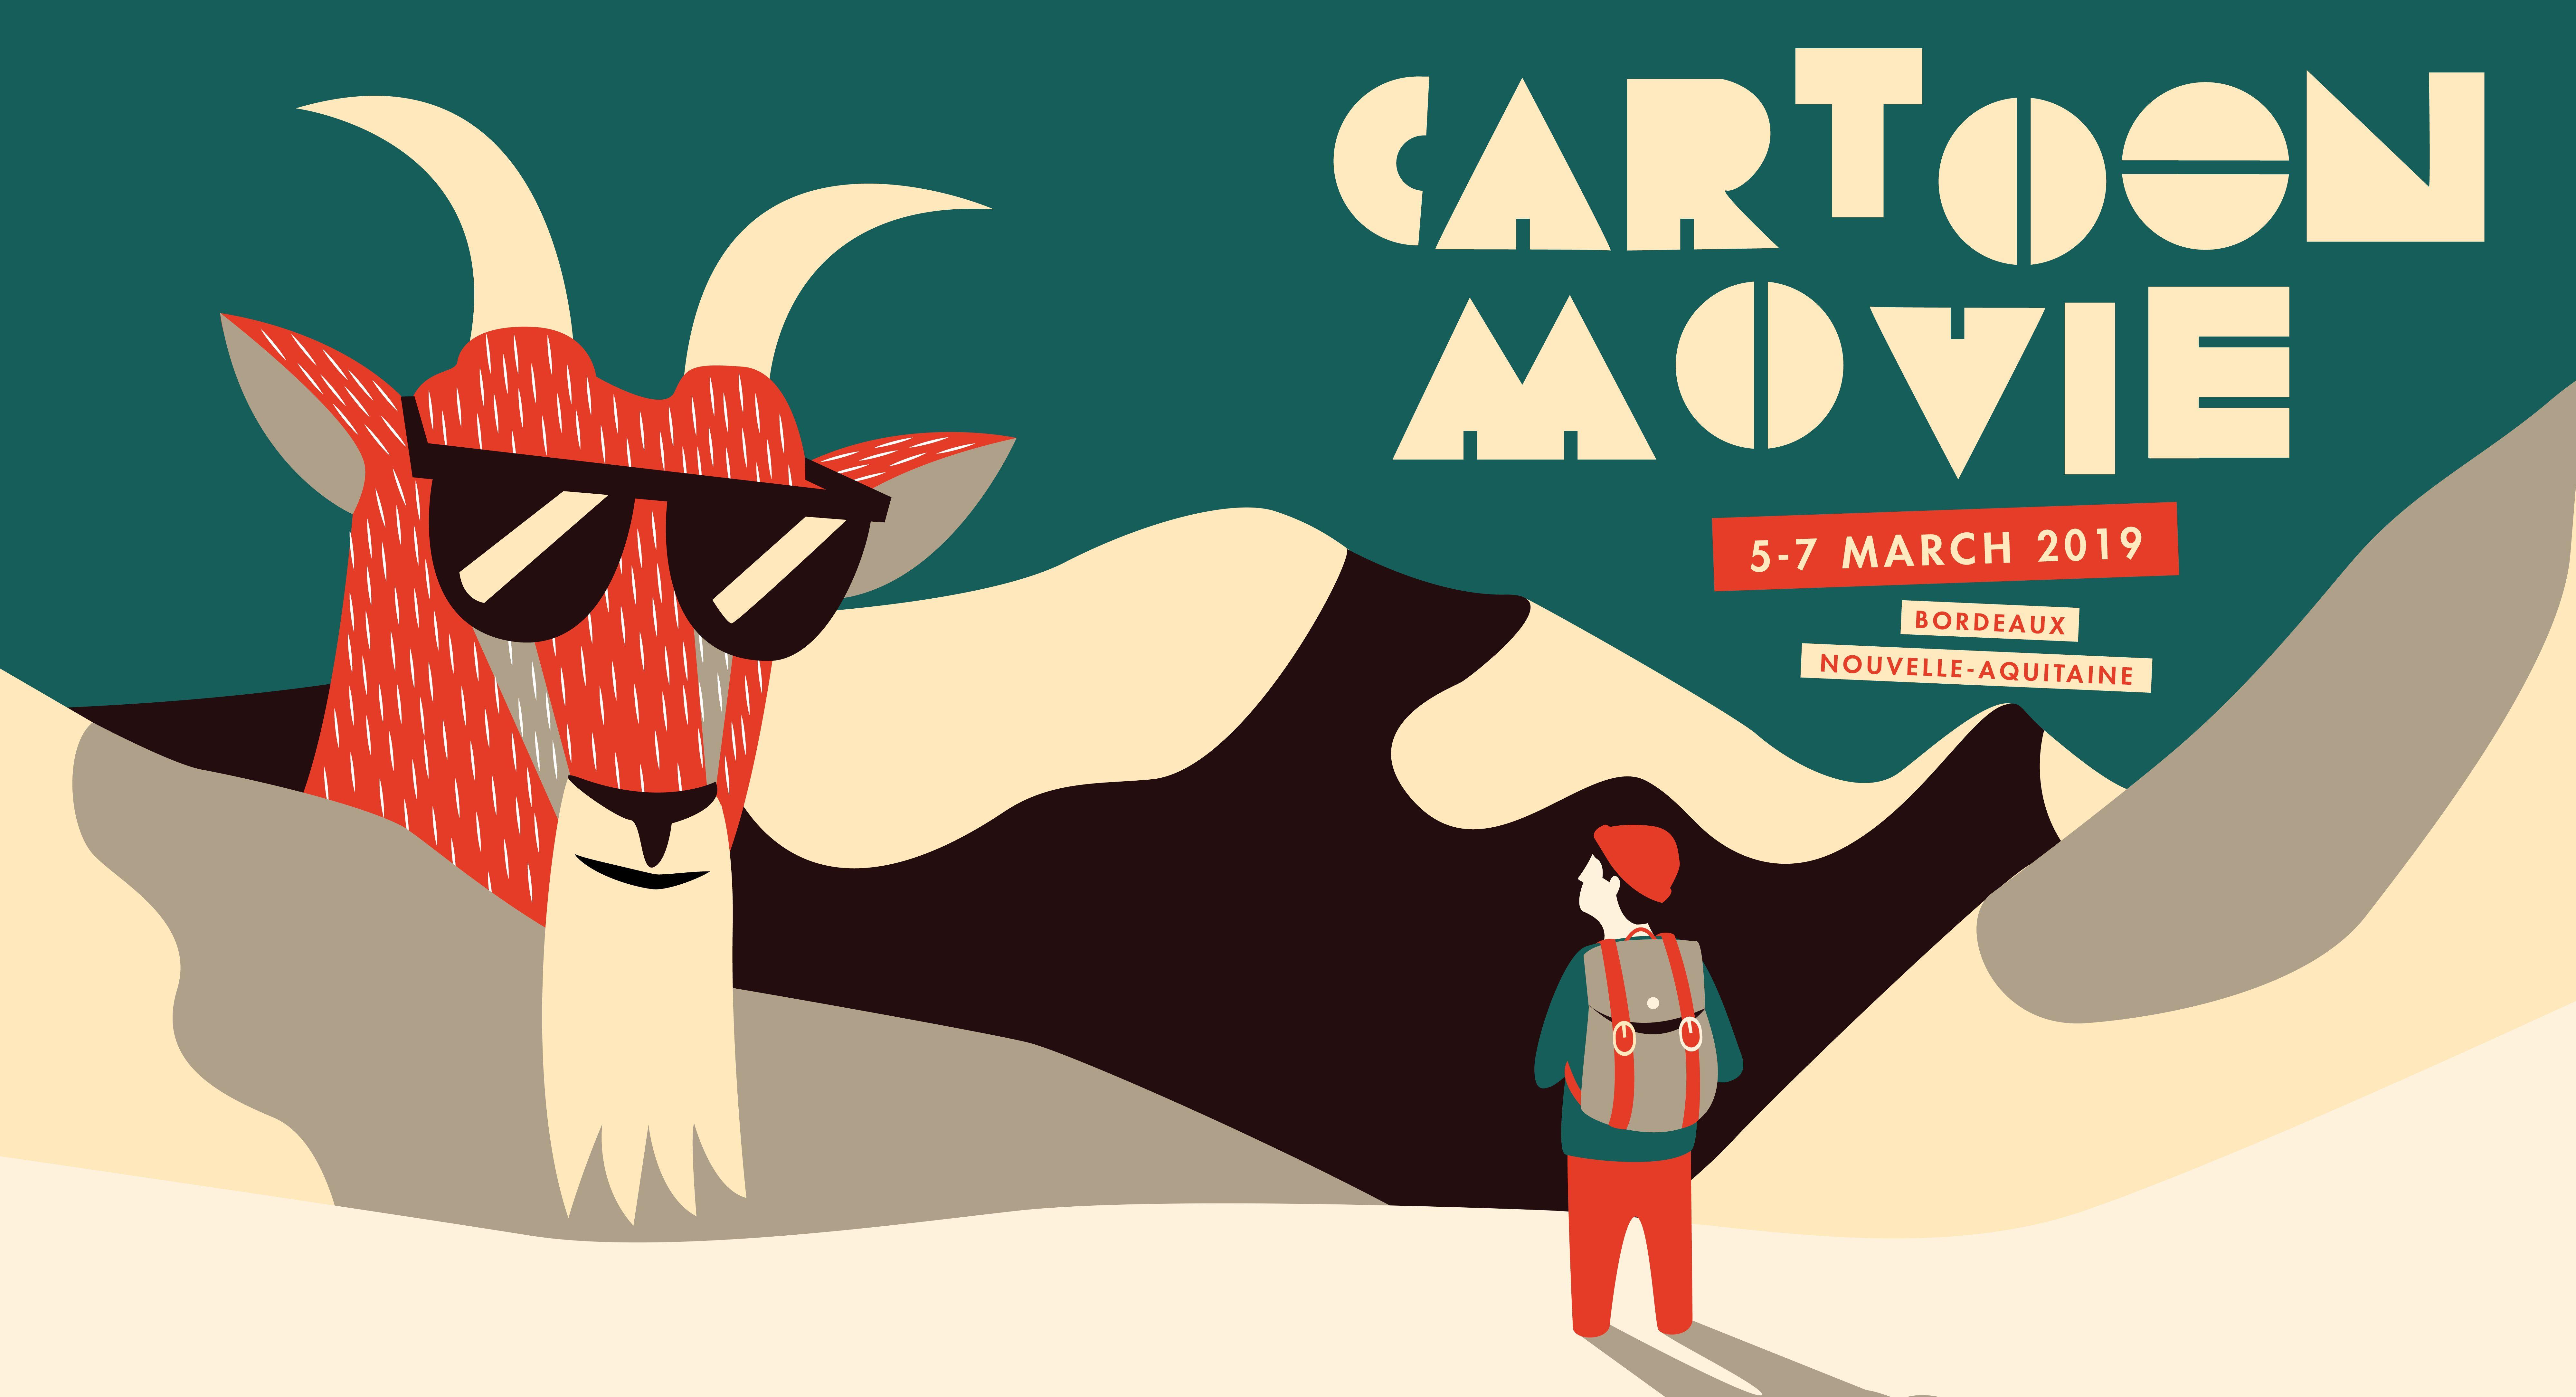 Cartoons to Movie Logo - Cartoon Media - Cartoon Movie - Cartoon Movie 2019